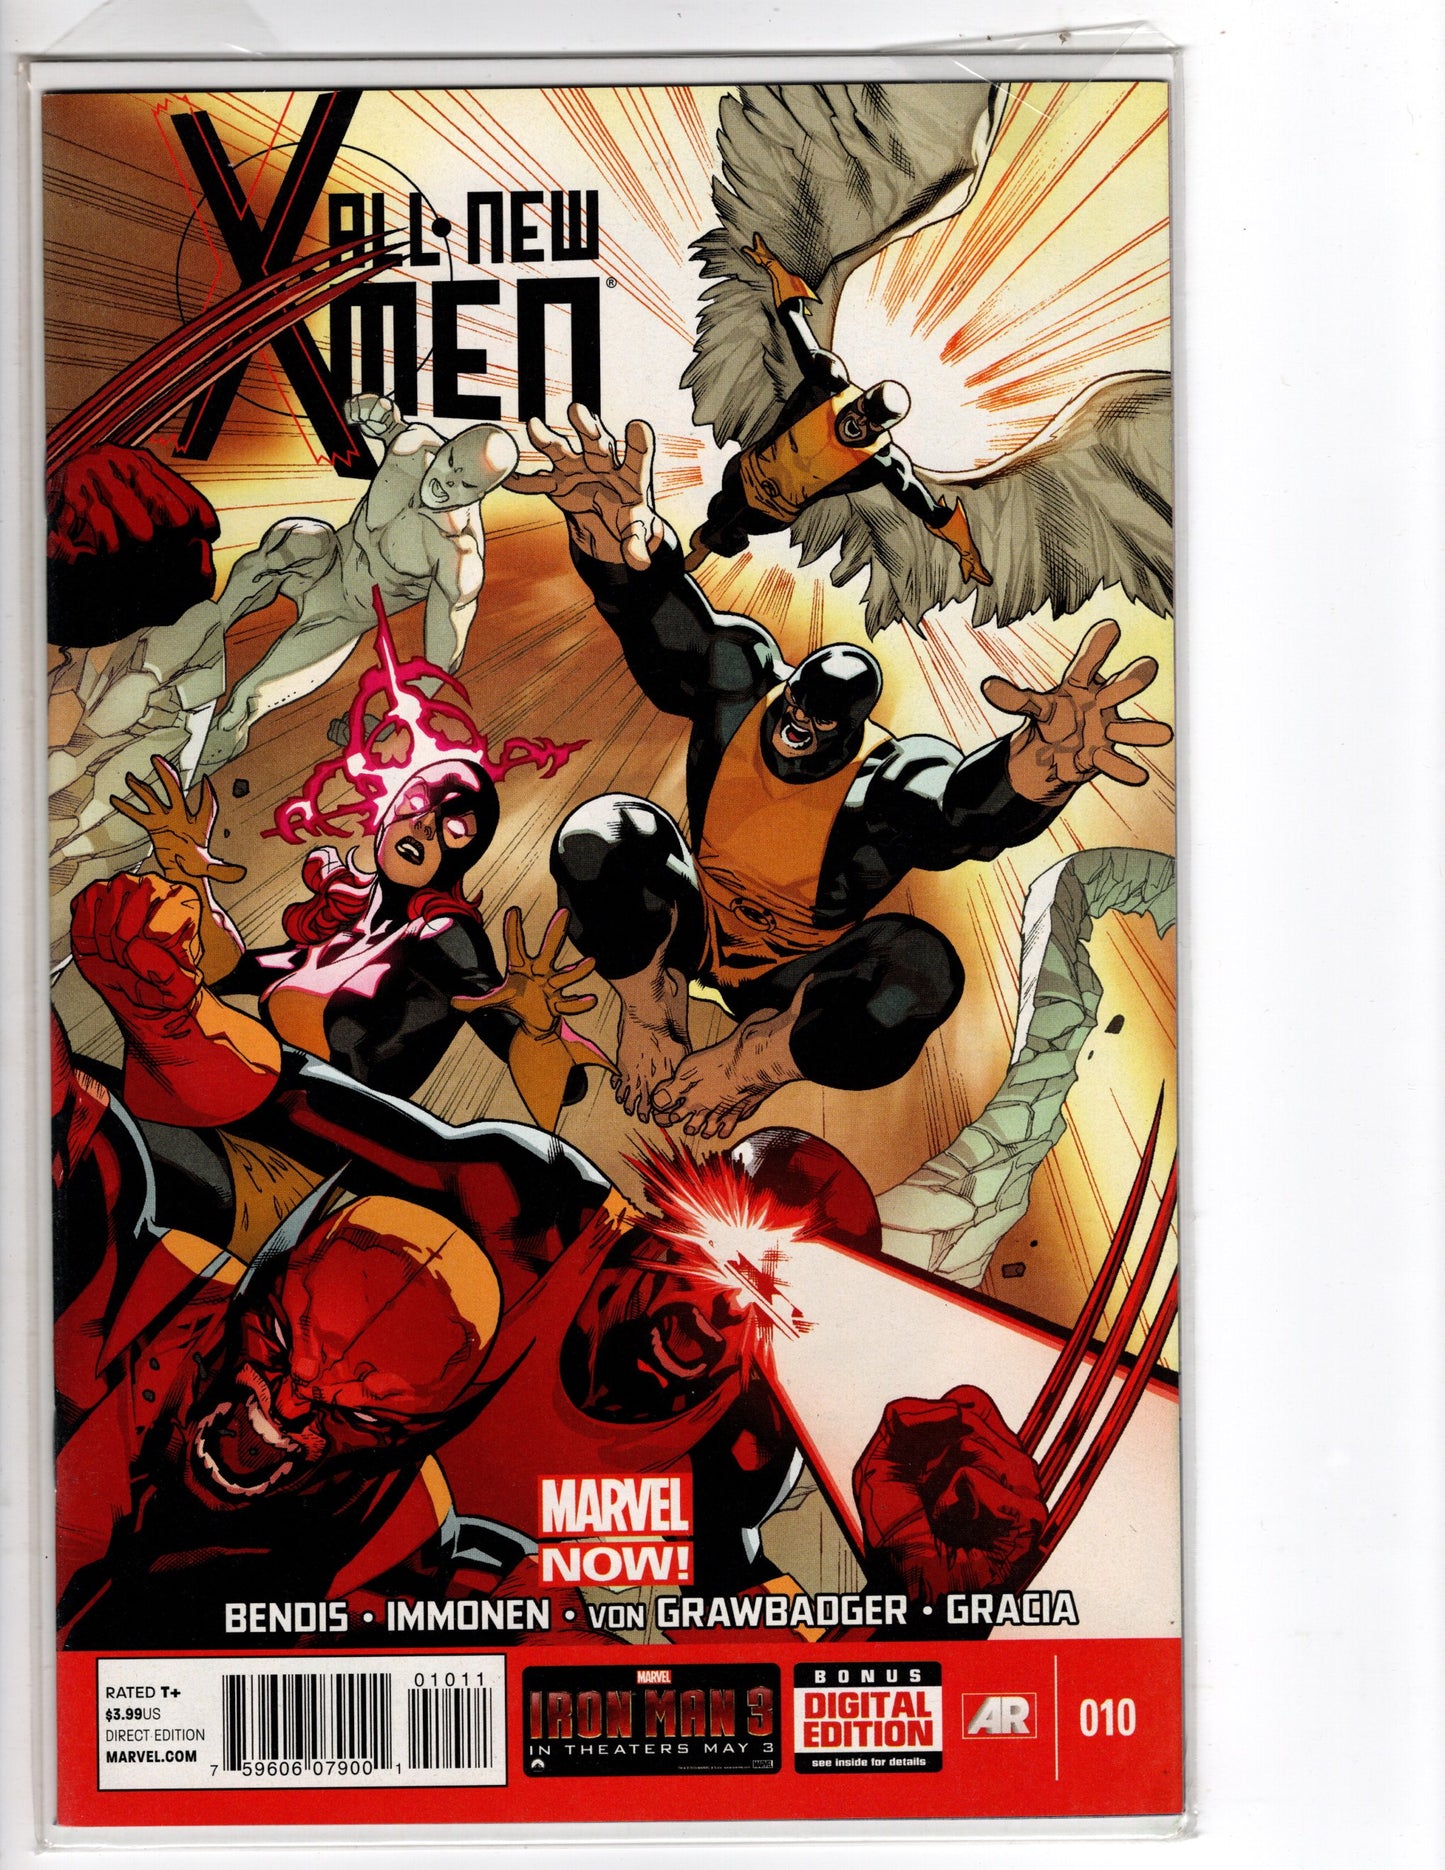 All New X-Men #10